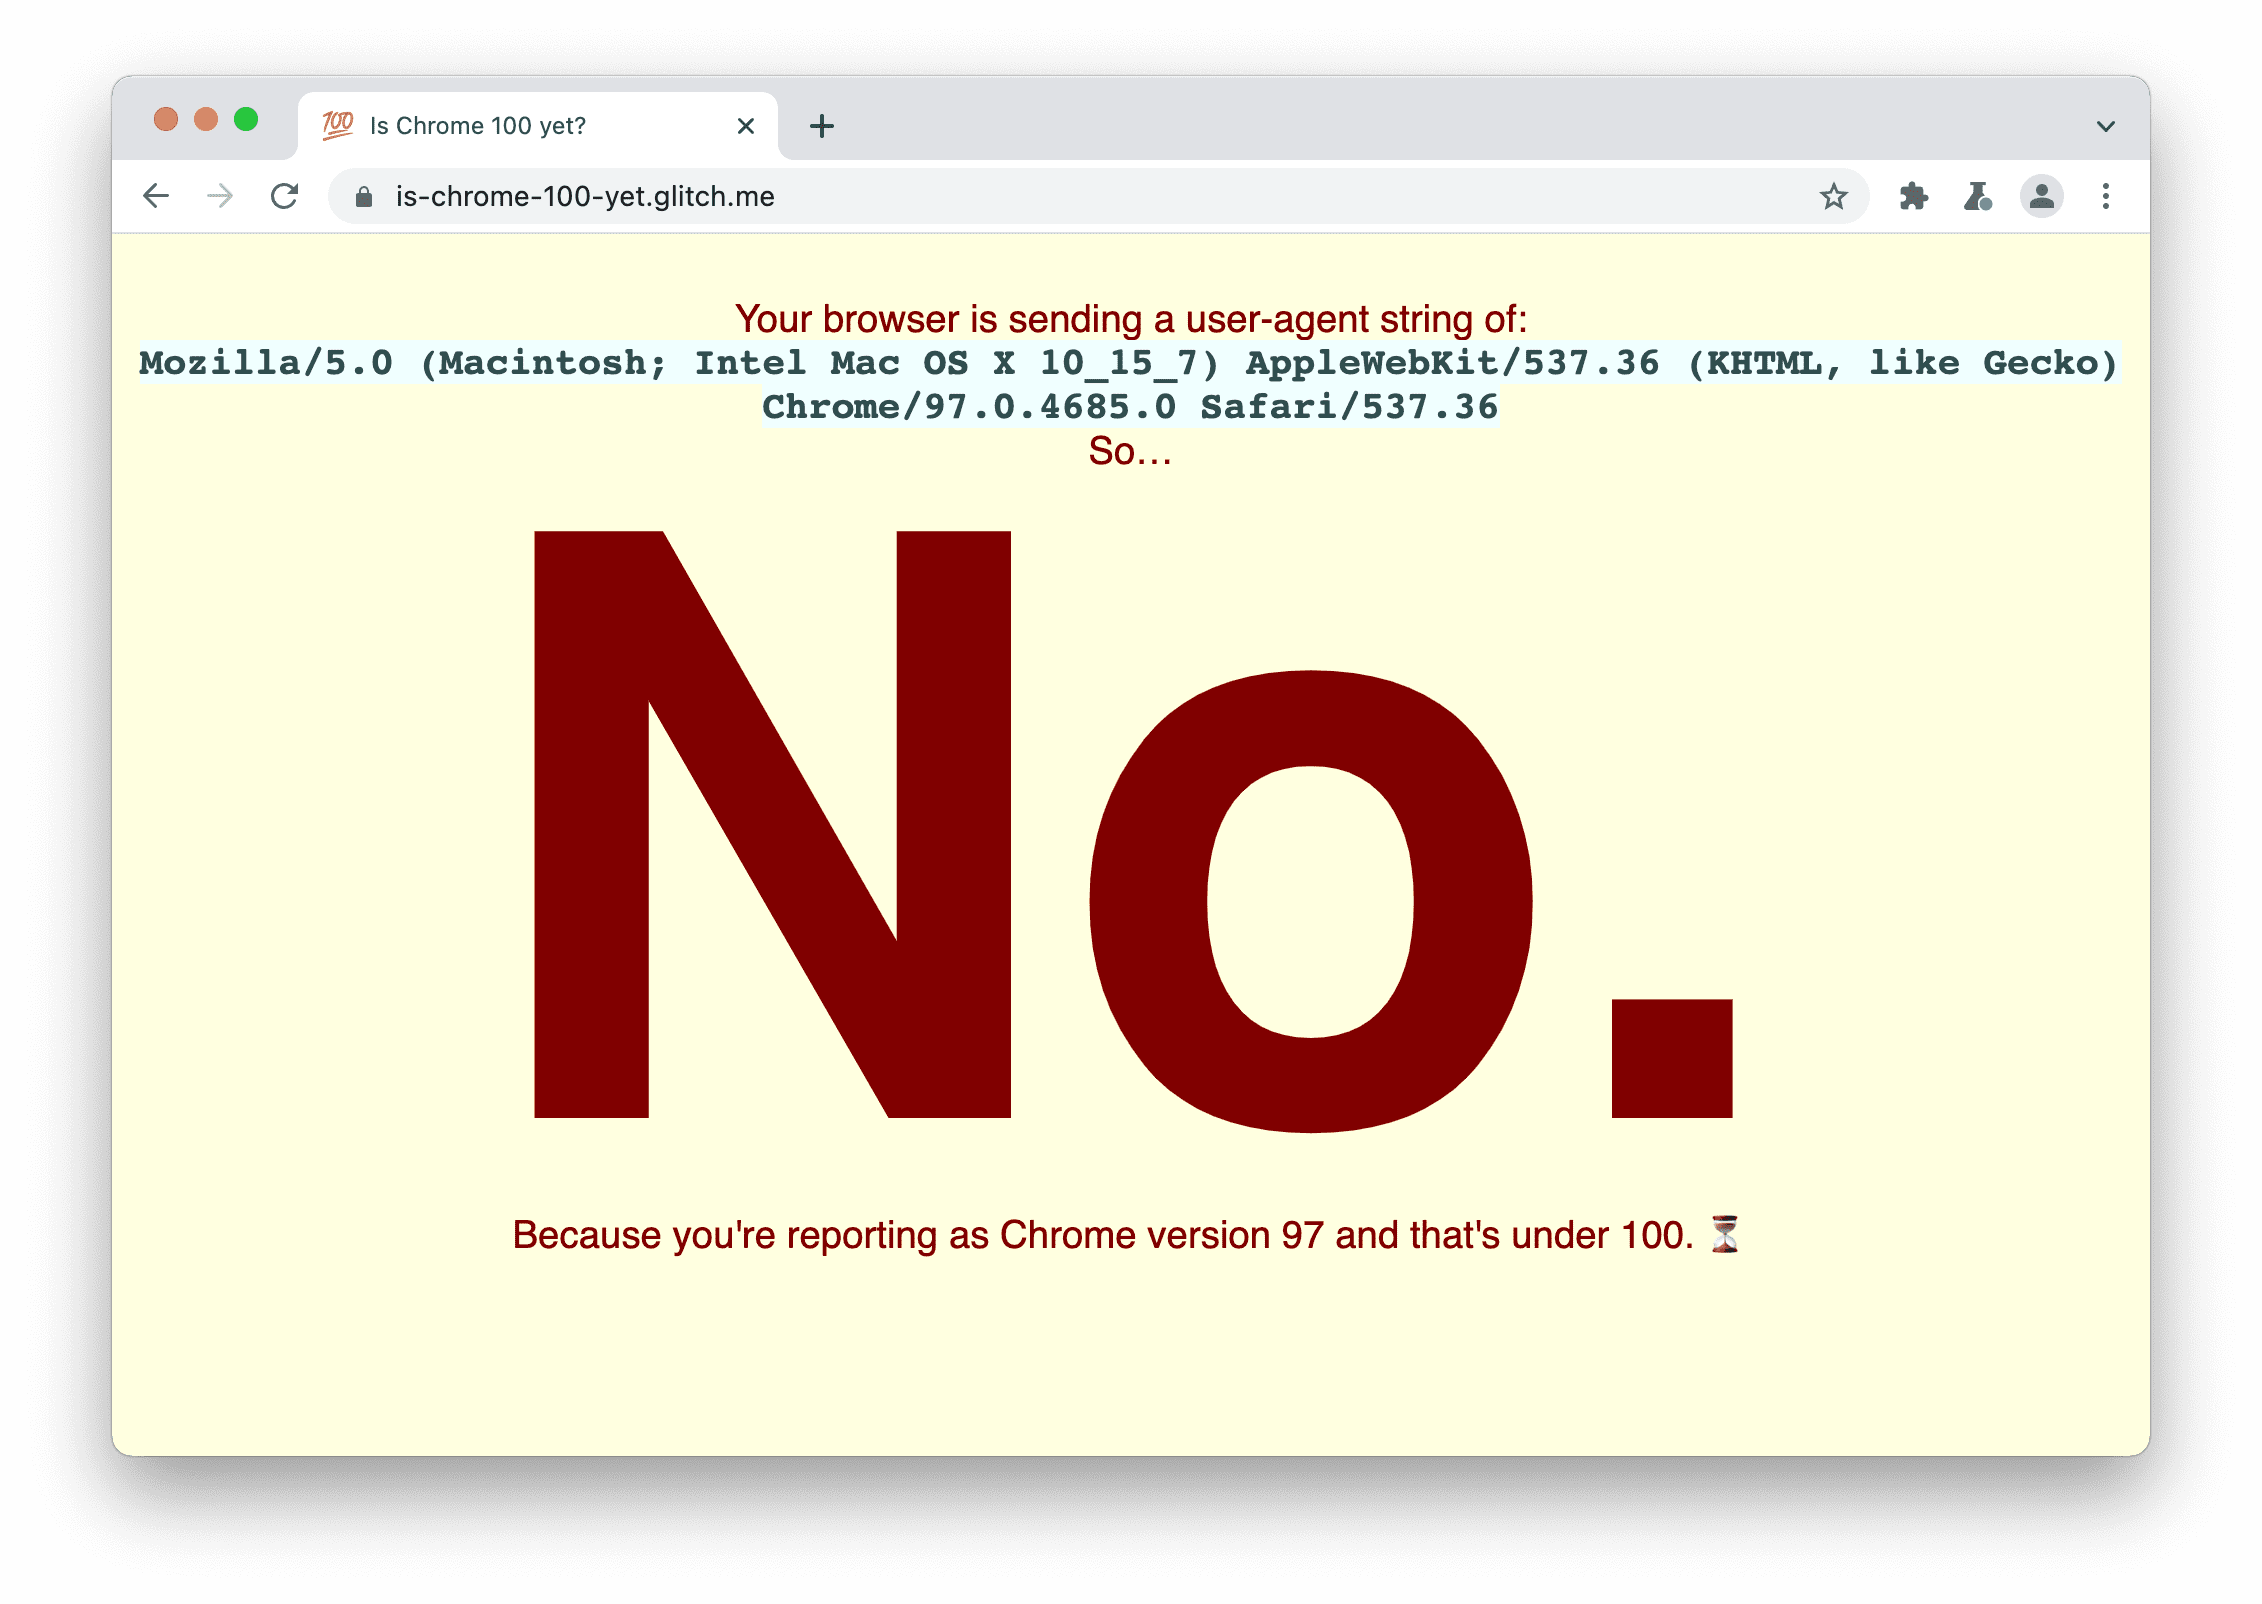 Un sitio que verifica si el navegador envía la string de usuario-agente 100. Aparecerá el siguiente mensaje: No, porque informas la versión de Chrome 97, que es inferior a 100.